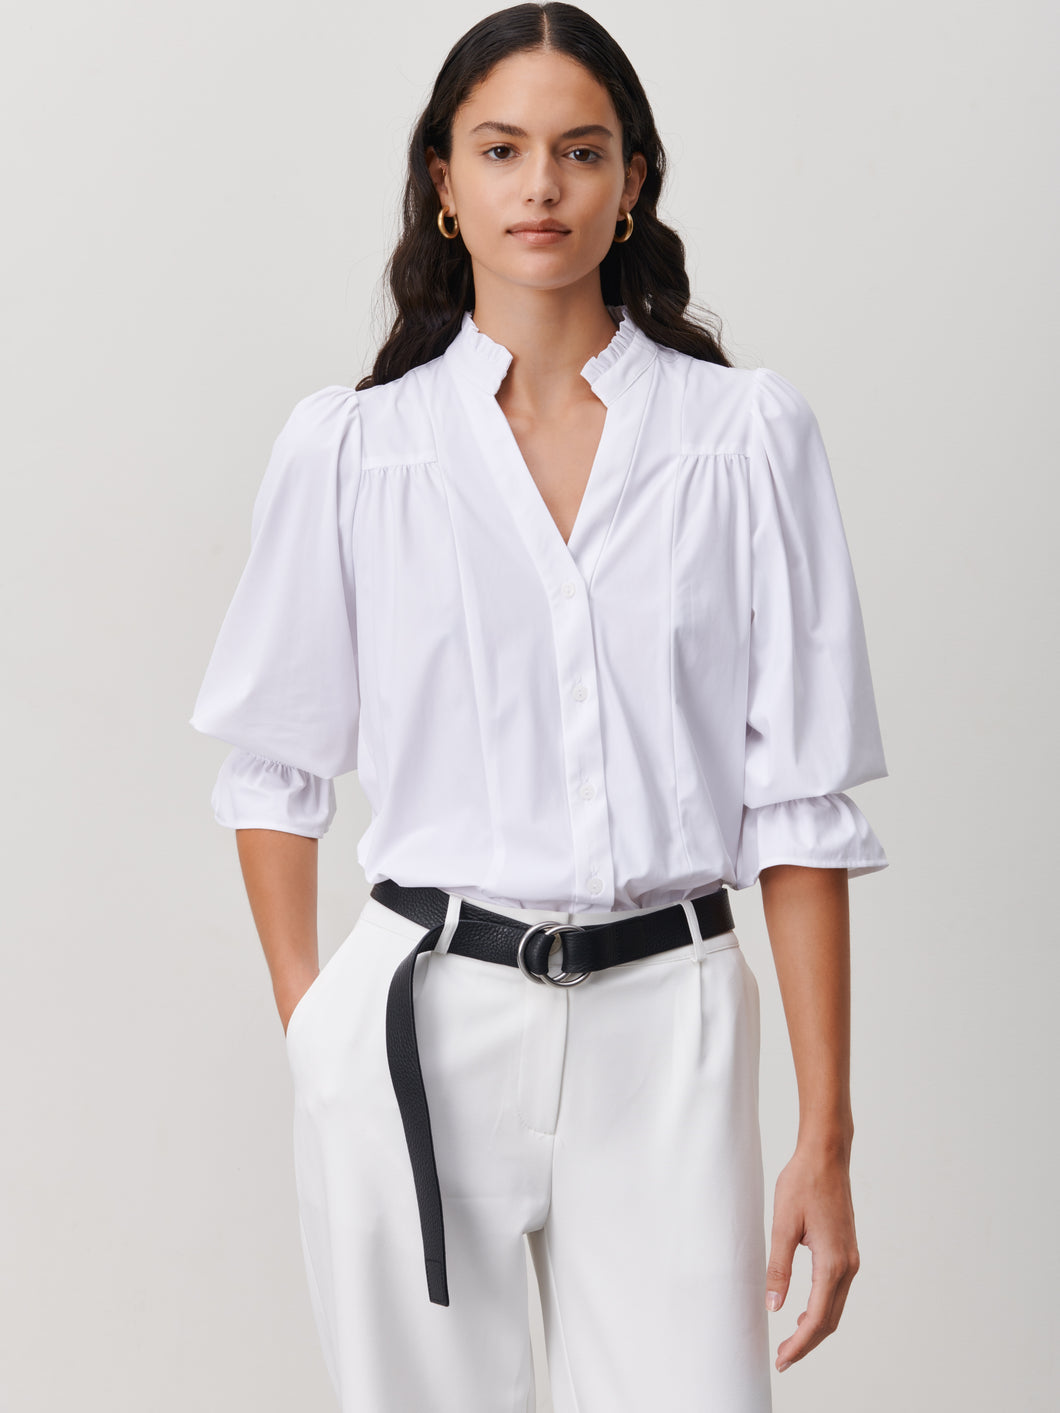 Witte Blouse van de Jane Lushka Collectie. Olivia Blouse is een vrouwelijke blouse met knoopjes, heeft een V-hals met ruffles aan de kraag en plooitjes op het voor en achterpand, als mooi detail. Met een gepofte 3/4 mouw en elastiek smokwerk. Blouse Olivia heeft een chique uitstraling en staat voor vrouwelijkheid en elegantie. De blouse is uitgevoerd in het wit, lila en armygreen en is van de bekende travel kwaliteit.